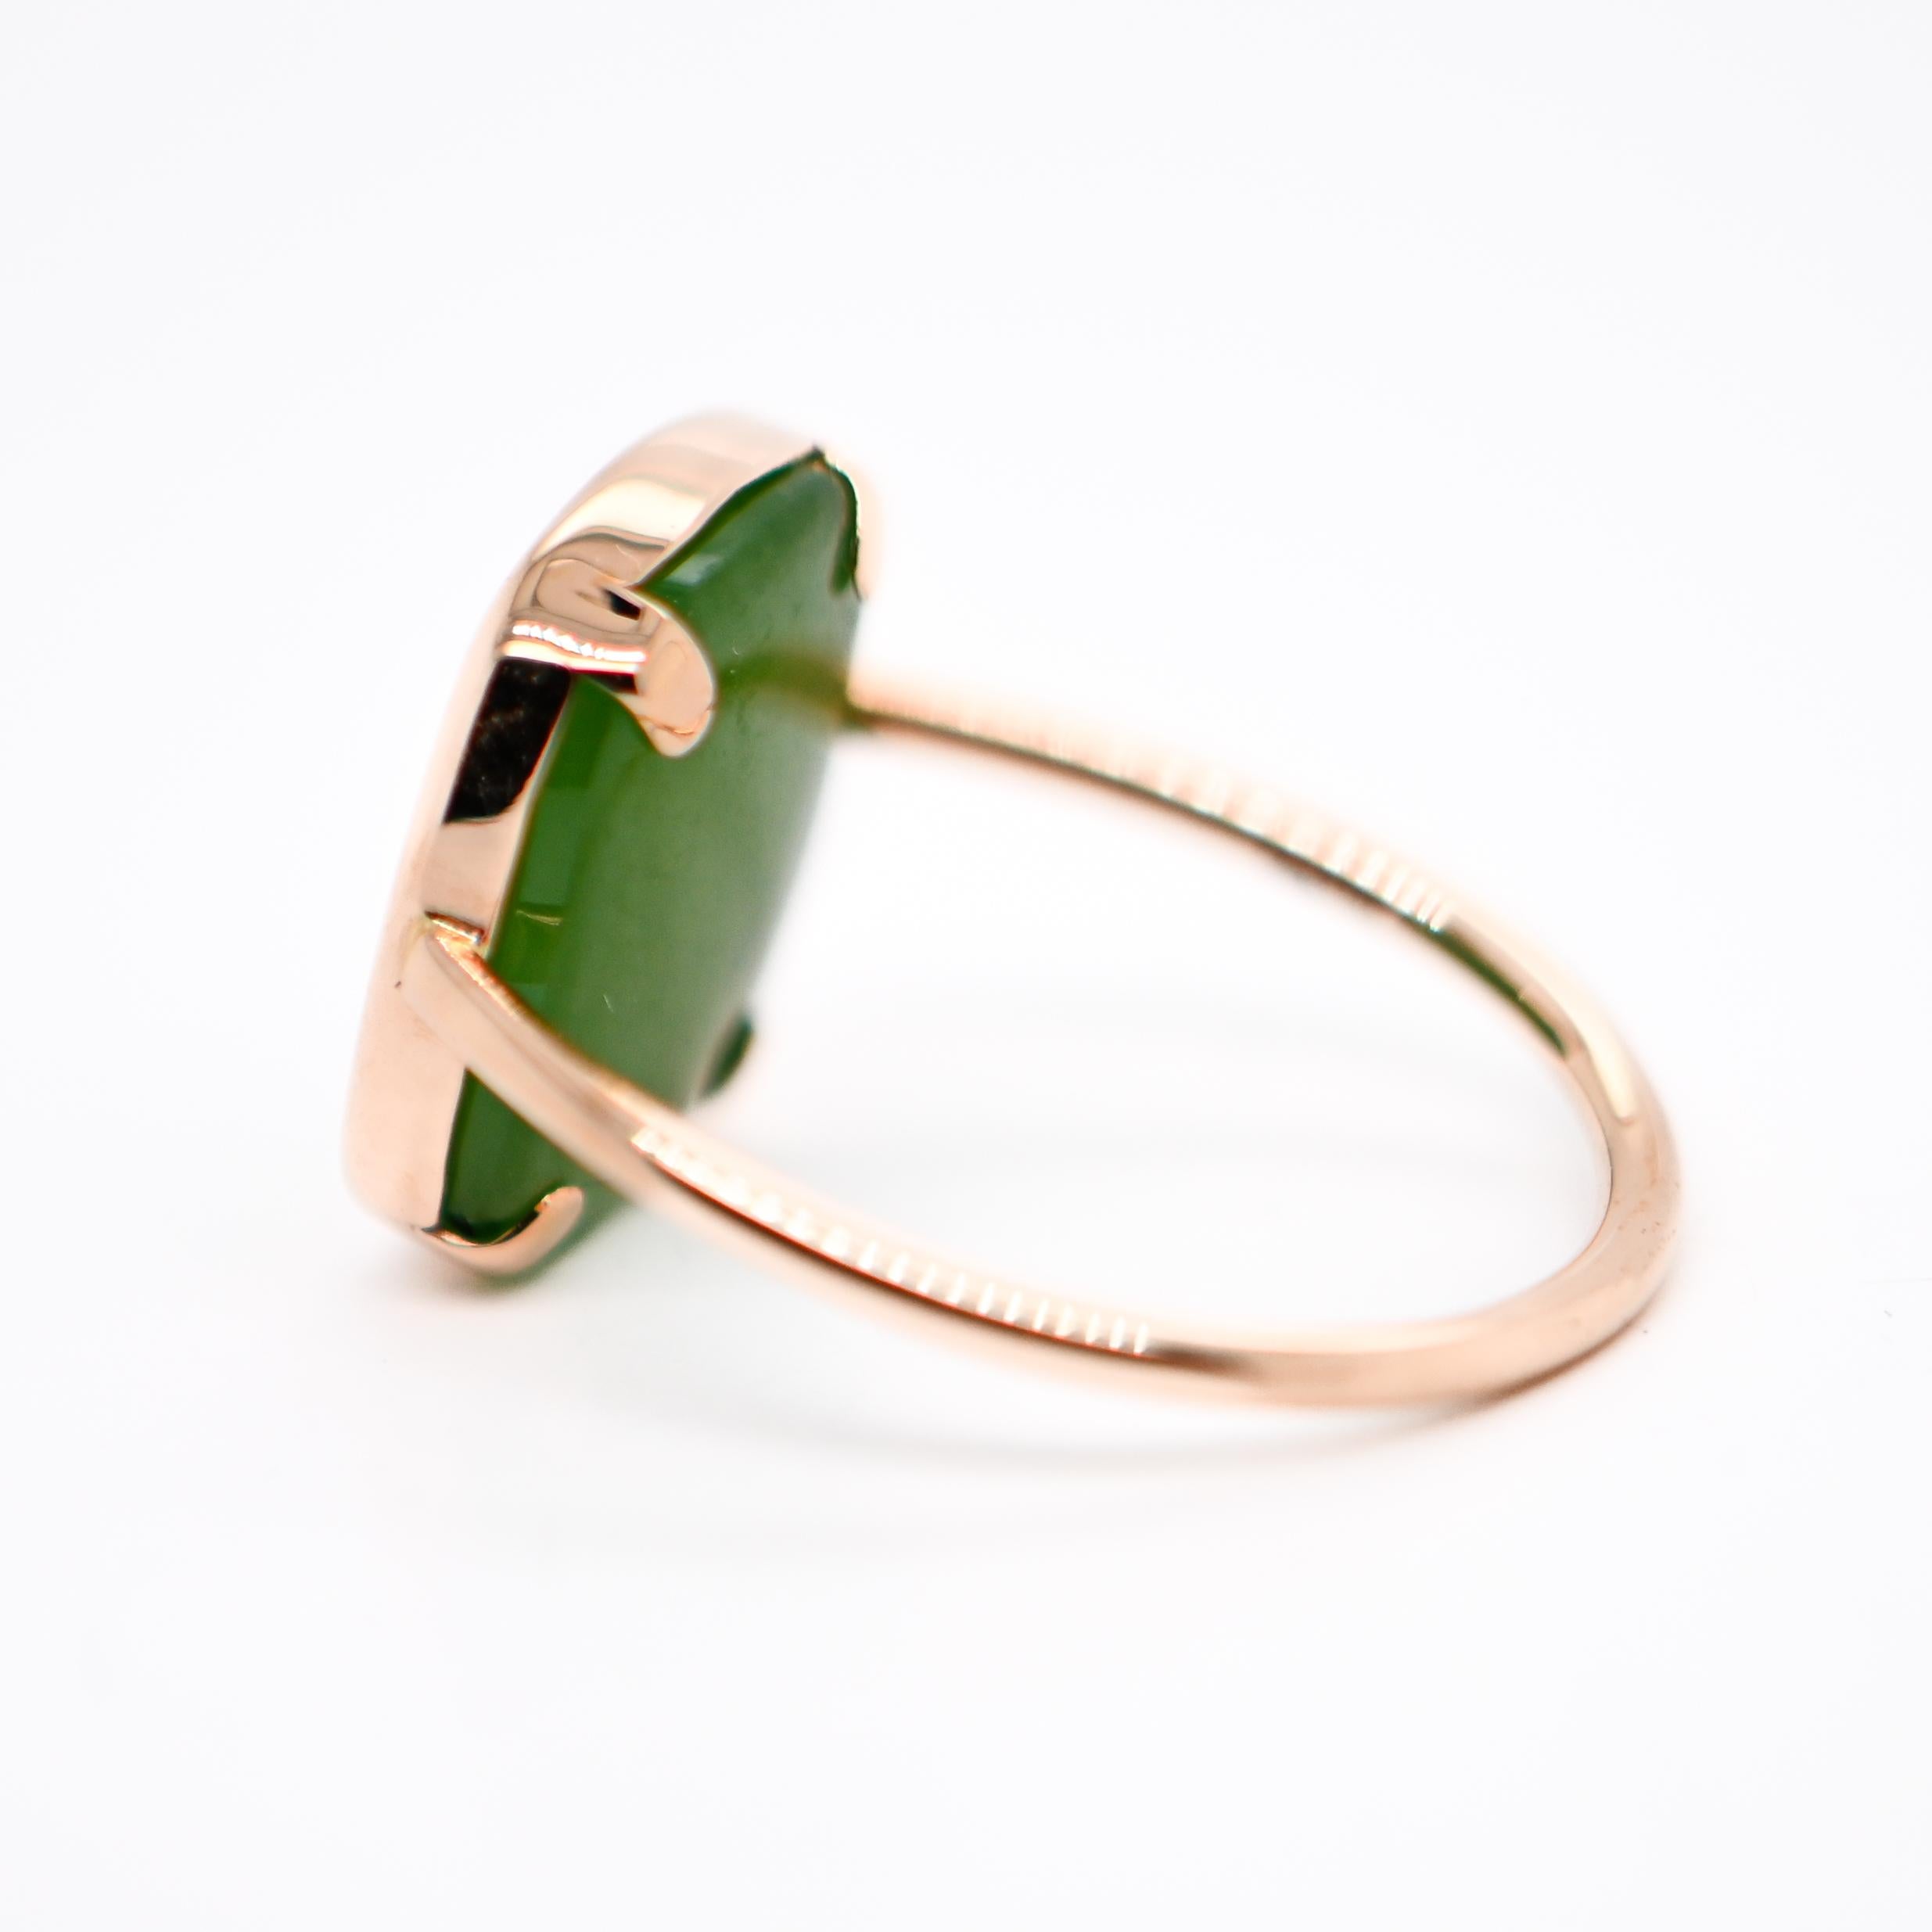 Entdecken Sie diesen schönen, modischen und modernen Ring aus Roségold, der sowohl zeitlose Eleganz als auch einen modernen Touch verkörpert. Dieser Ring, besetzt mit einem kostbaren Schatz der Natur, einem Jadestein von seltener Schönheit, ist die